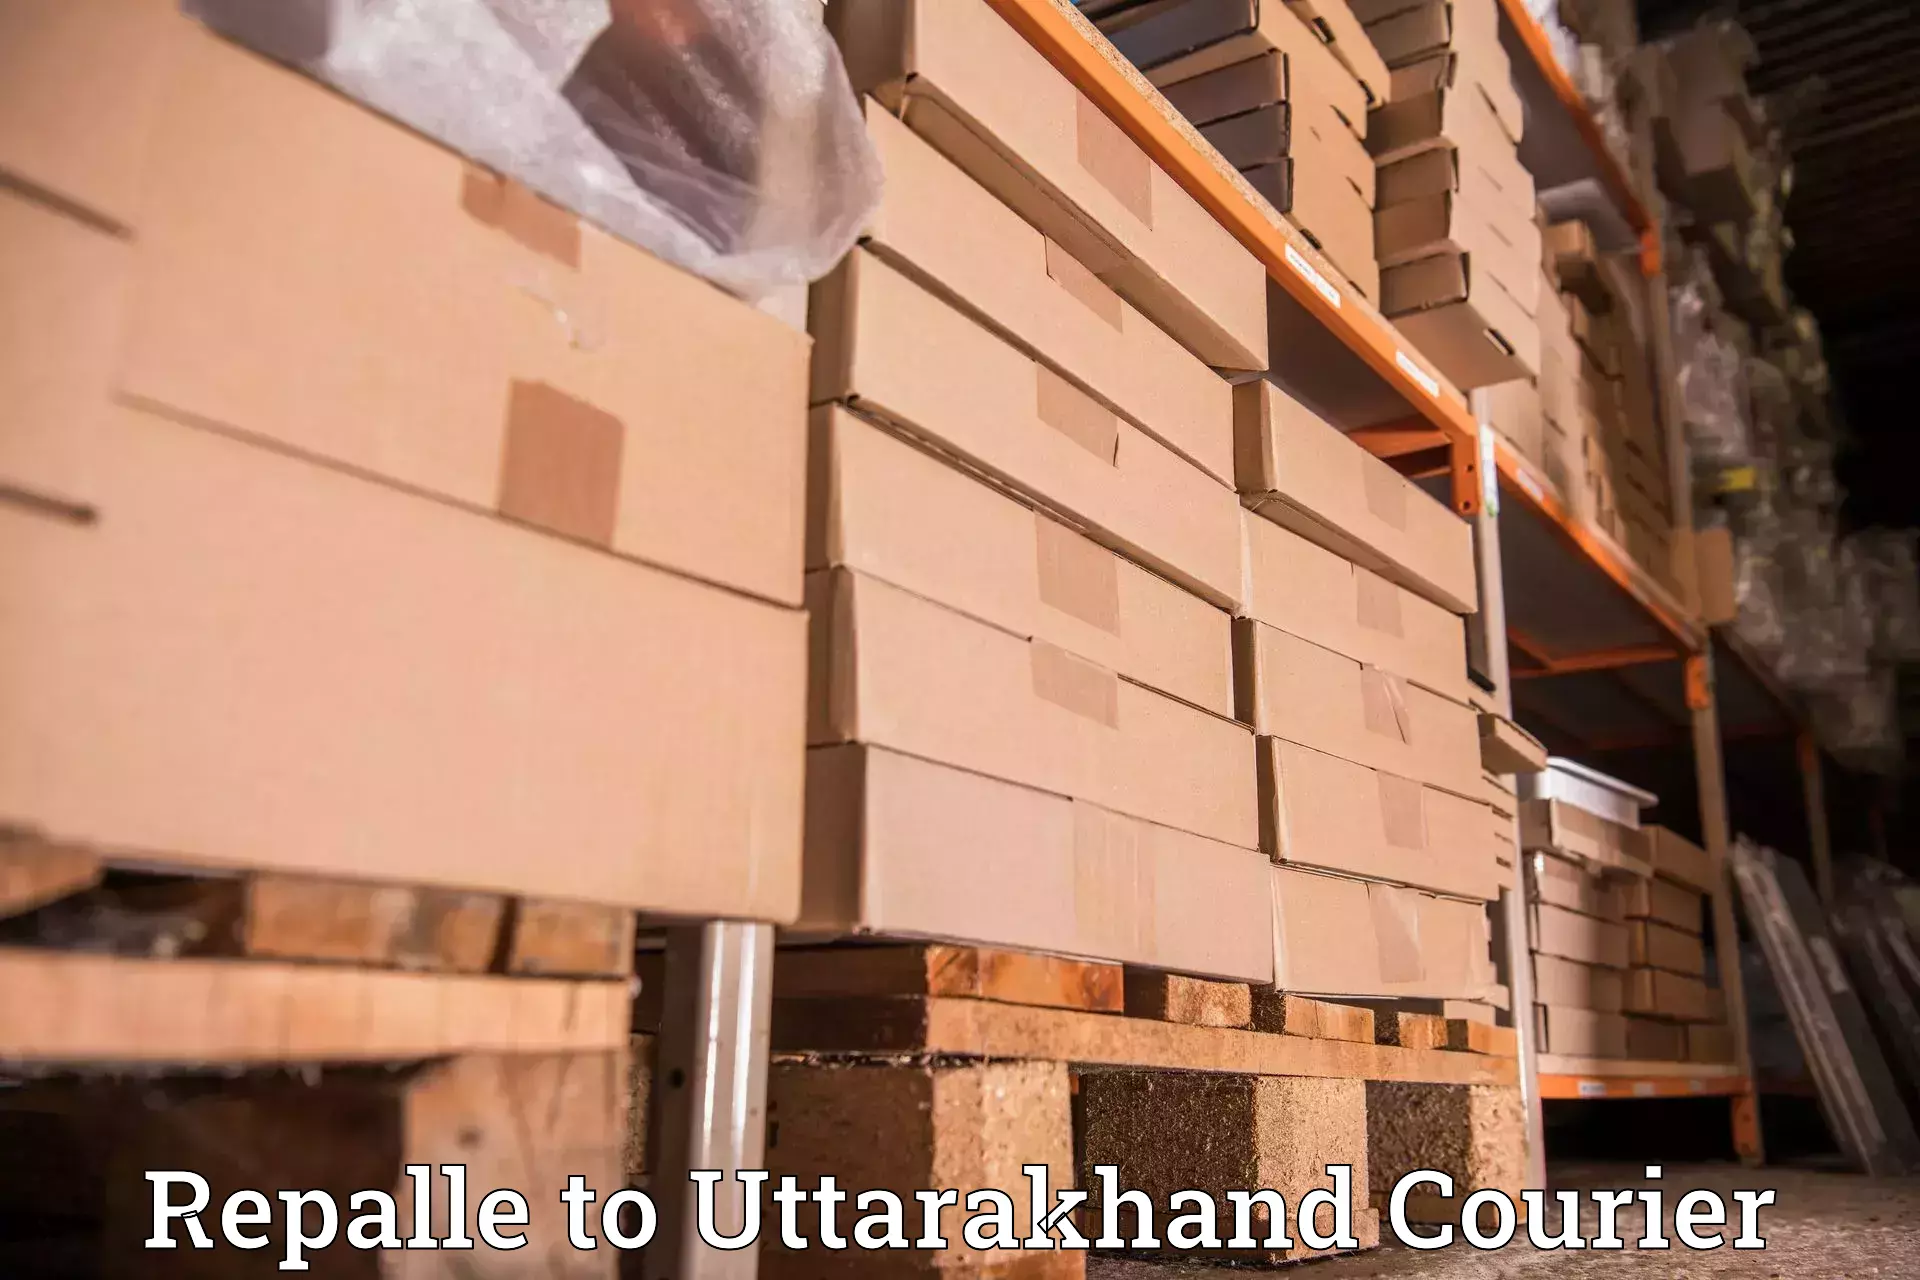 Courier insurance Repalle to Uttarakhand